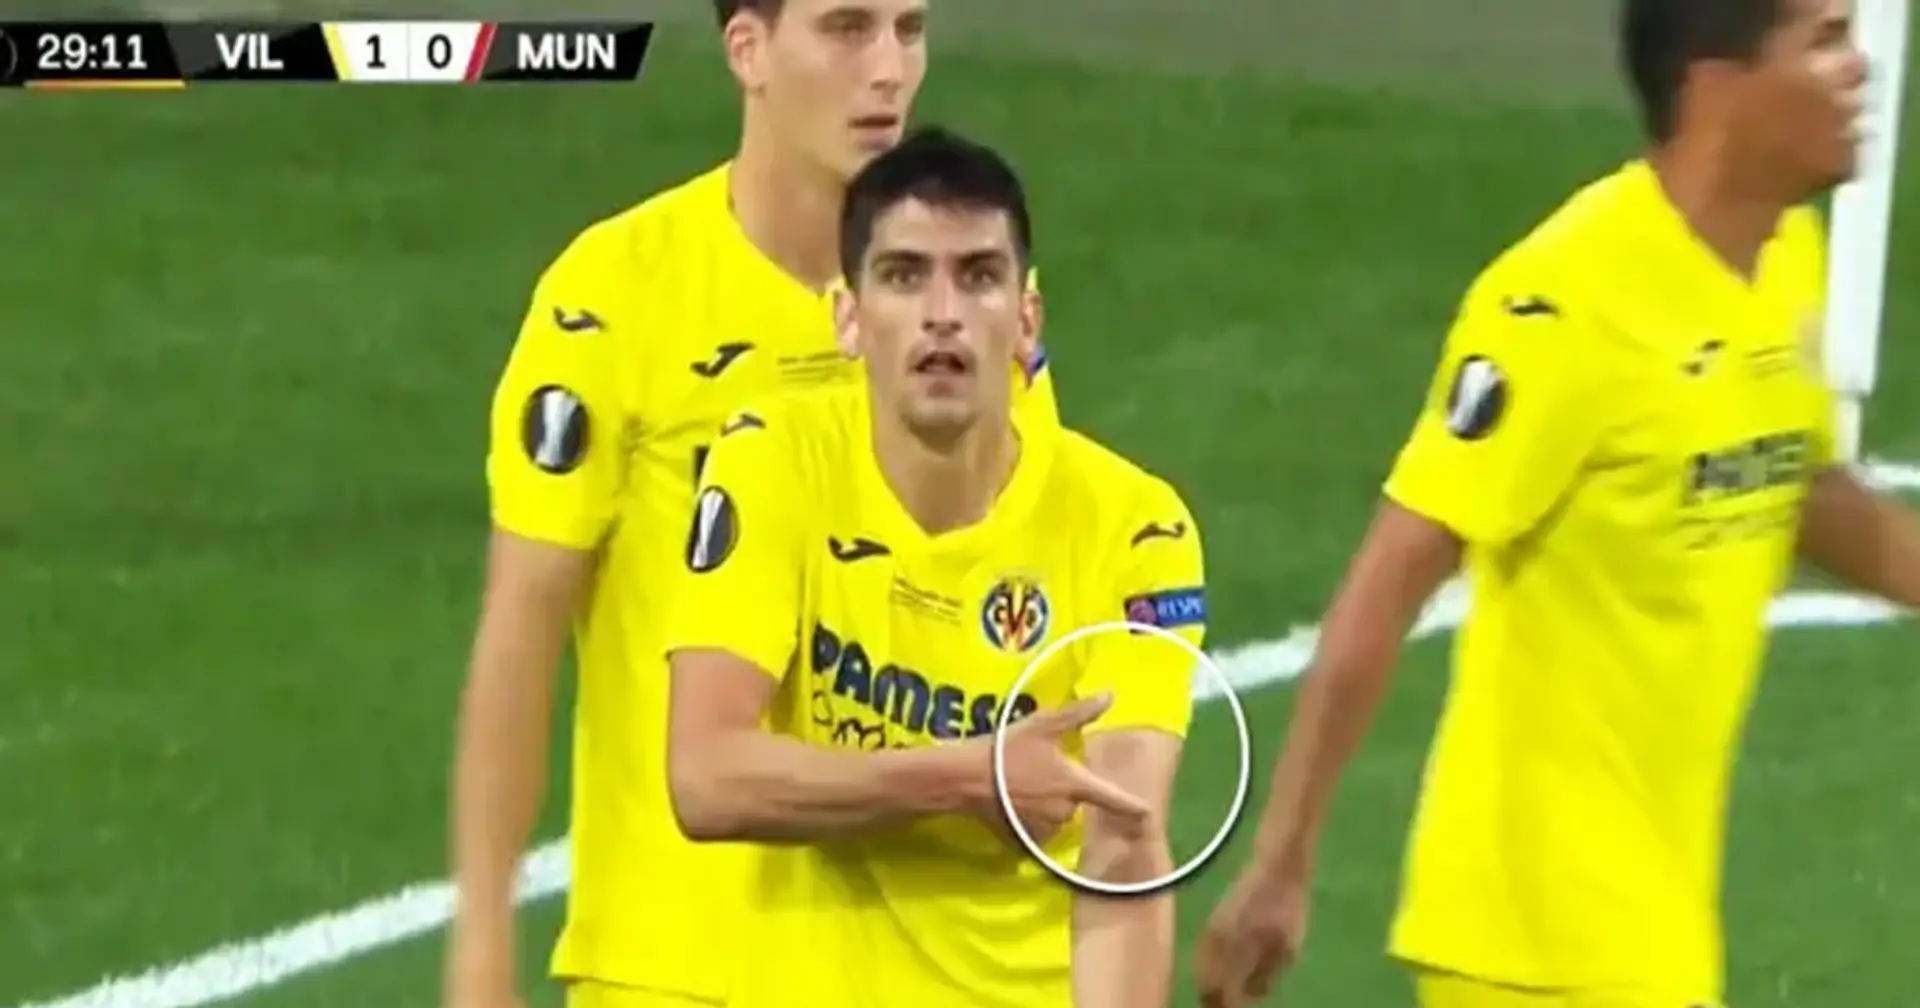 Revelado: La historia detrás de la 'extraña' celebración del jugador del Villarreal en la final de la Europa League